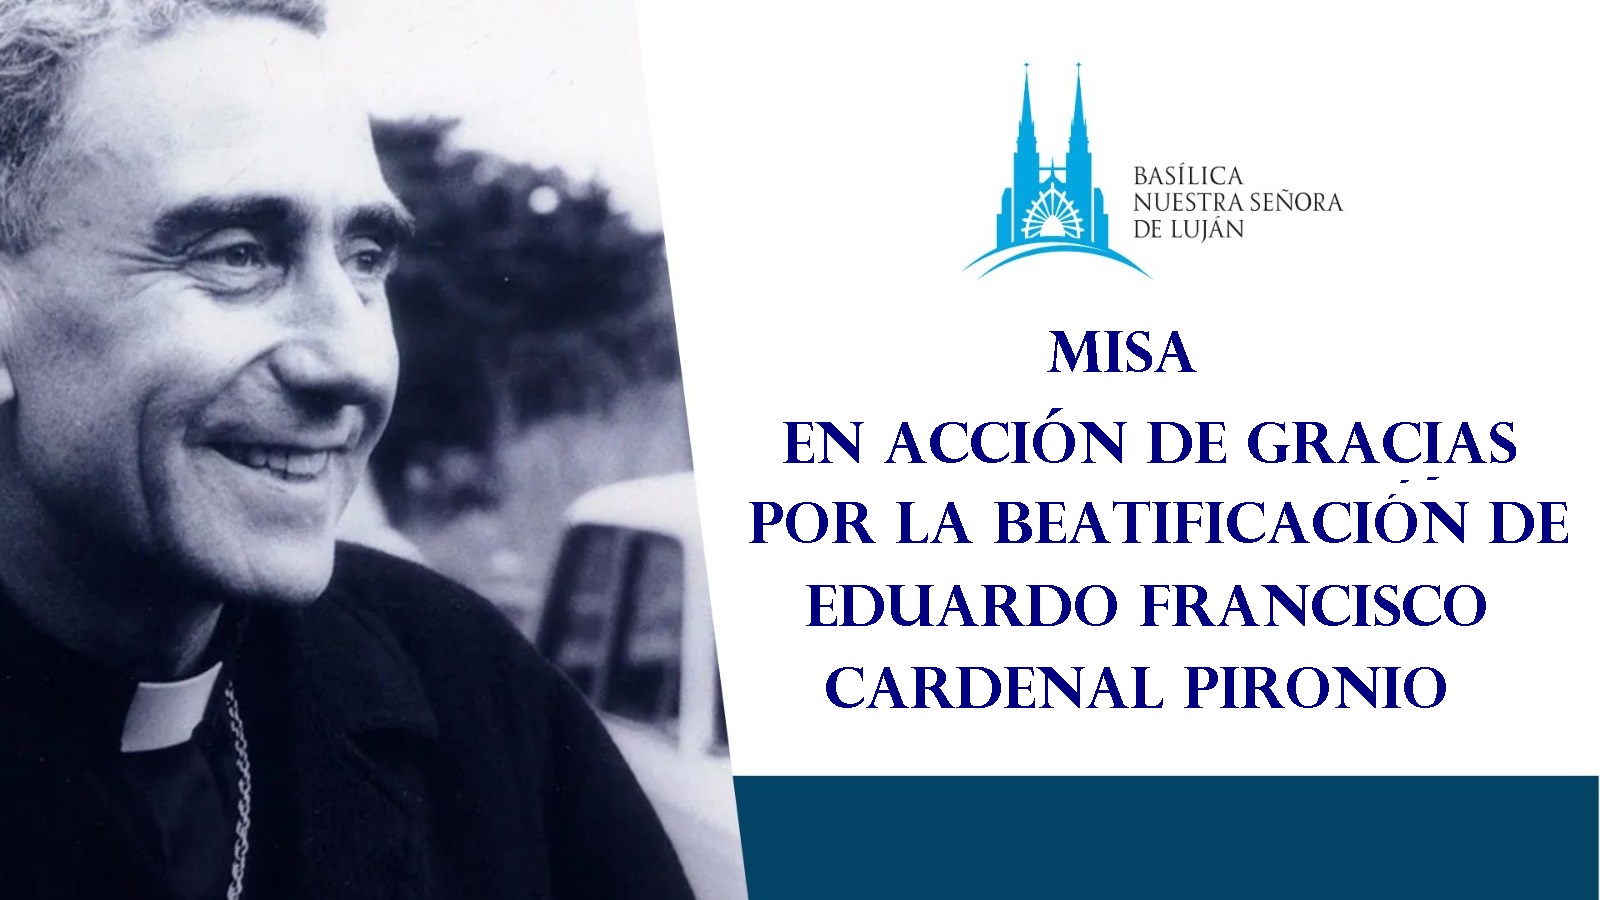 Misa en Acción de Gracias por la Beatificación del Cardenal Pironio